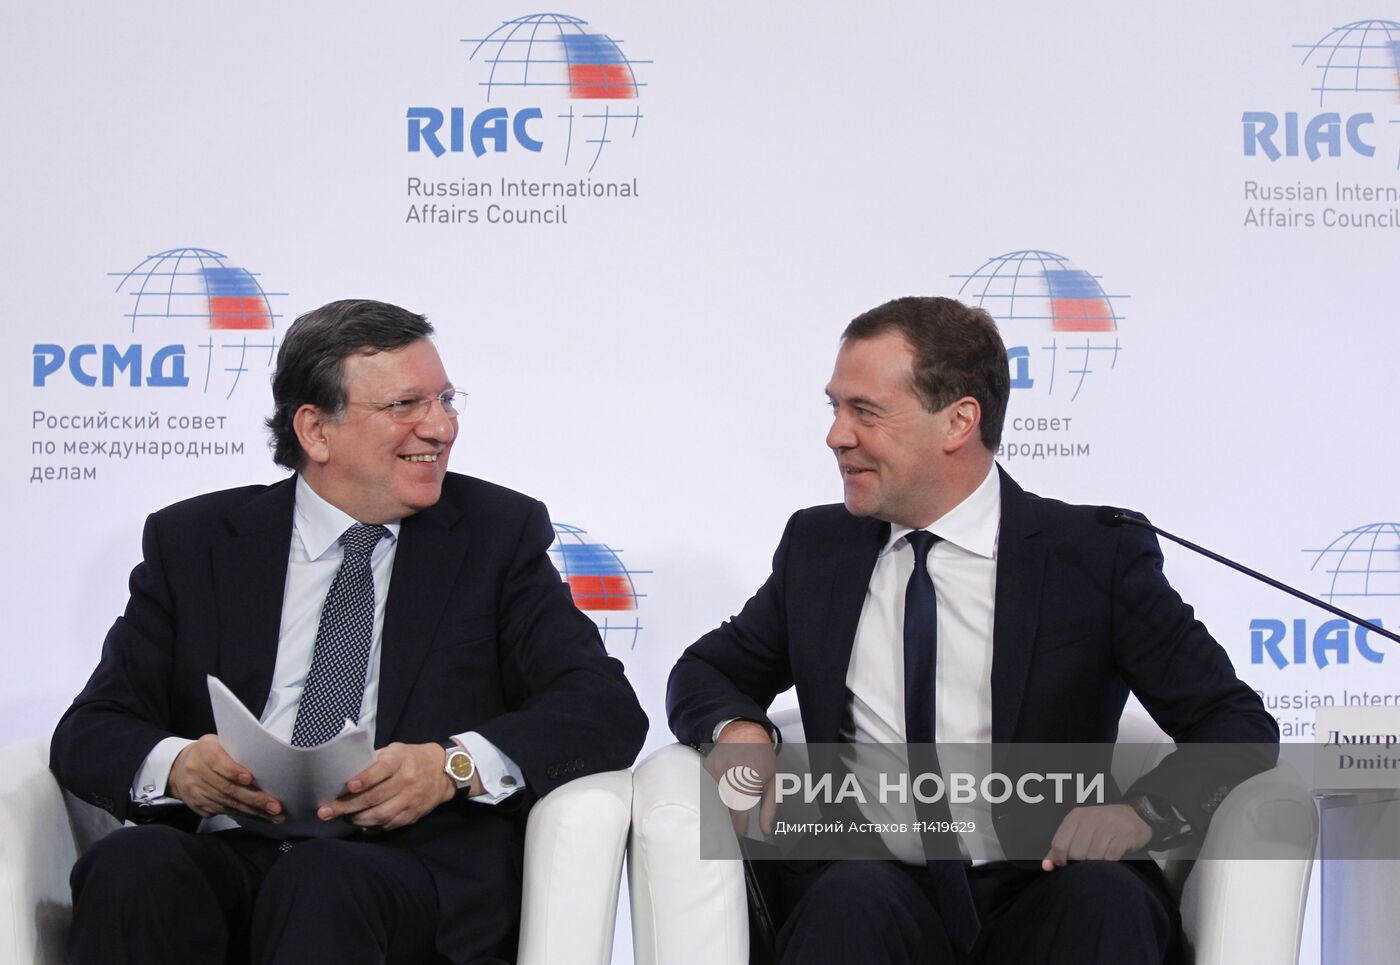 Д. Медведев на конференции "Россия-ЕС: возможности партнерства"